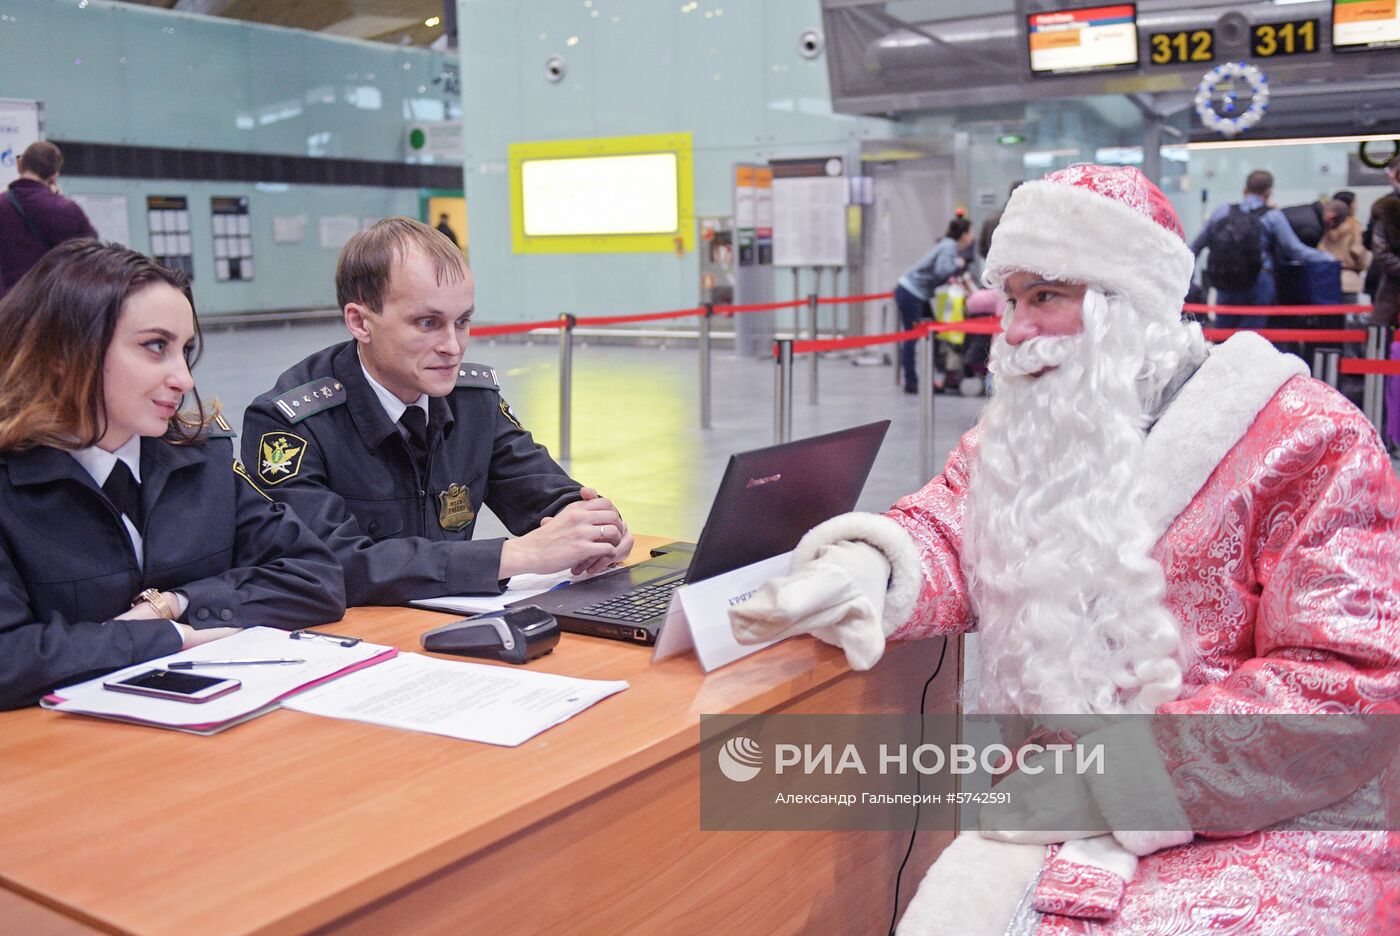 Акция "Узнай о своих долгах" в аэропорту Пулково